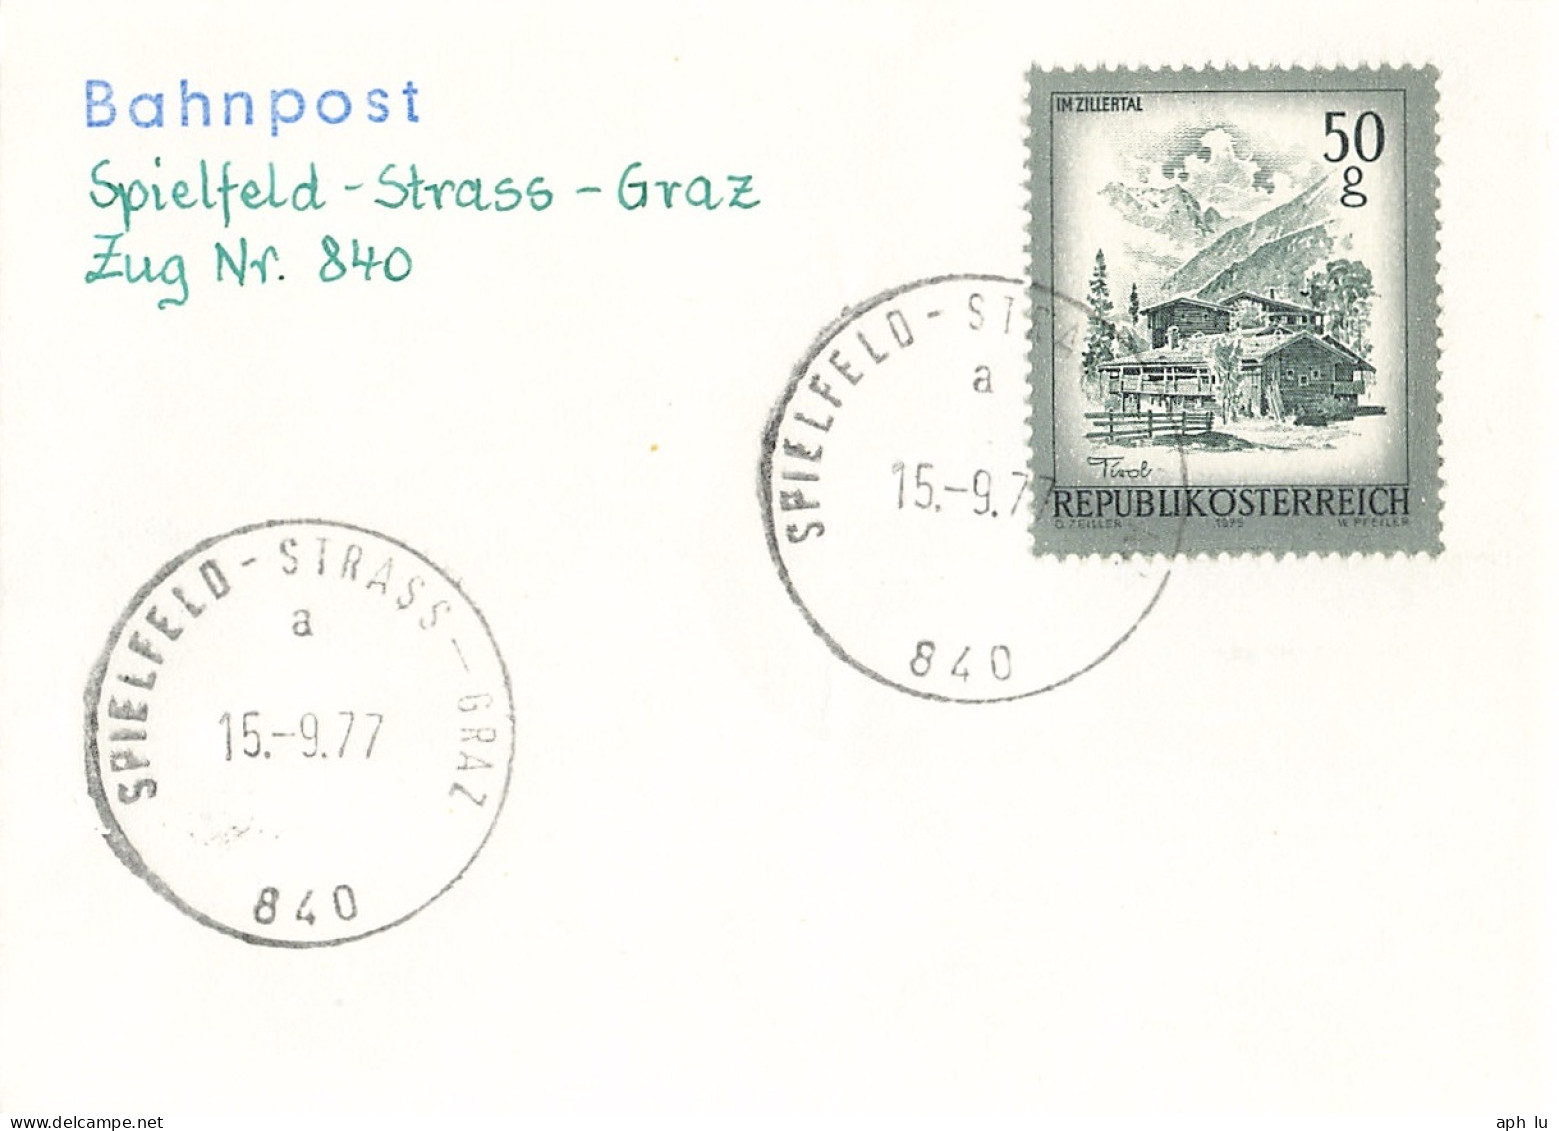 Bahnpost (R.P.O./T.P.O) Spielfeld Strass-Graz [Ausschnitt] (AD3122) - Covers & Documents